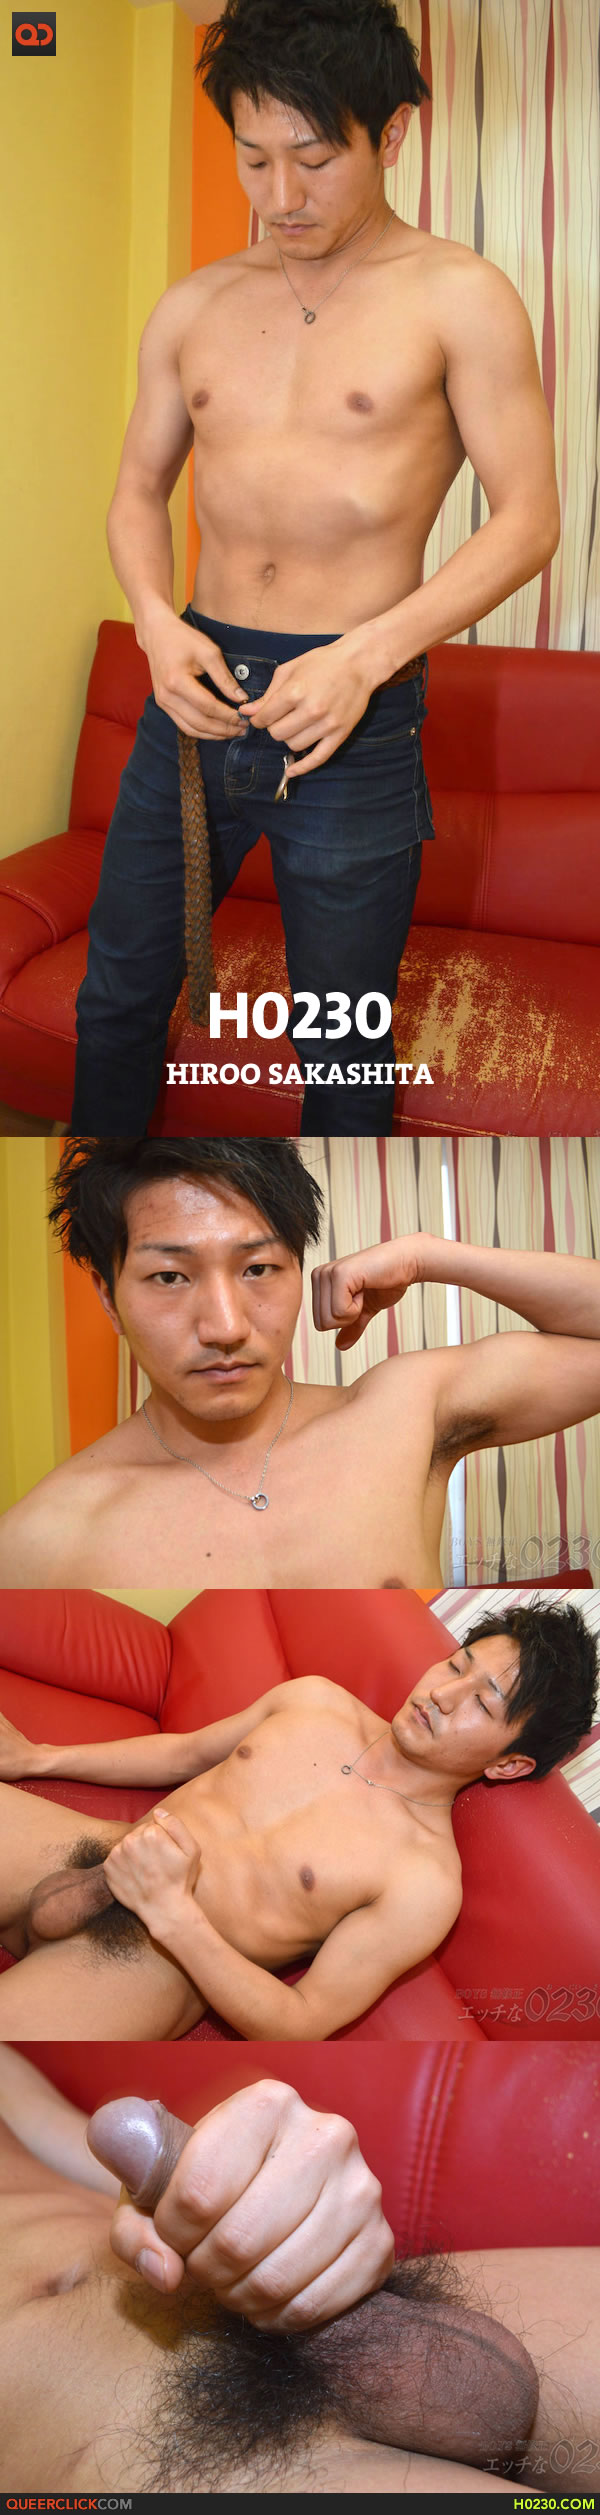 h0230-hiroo-sakashita-2